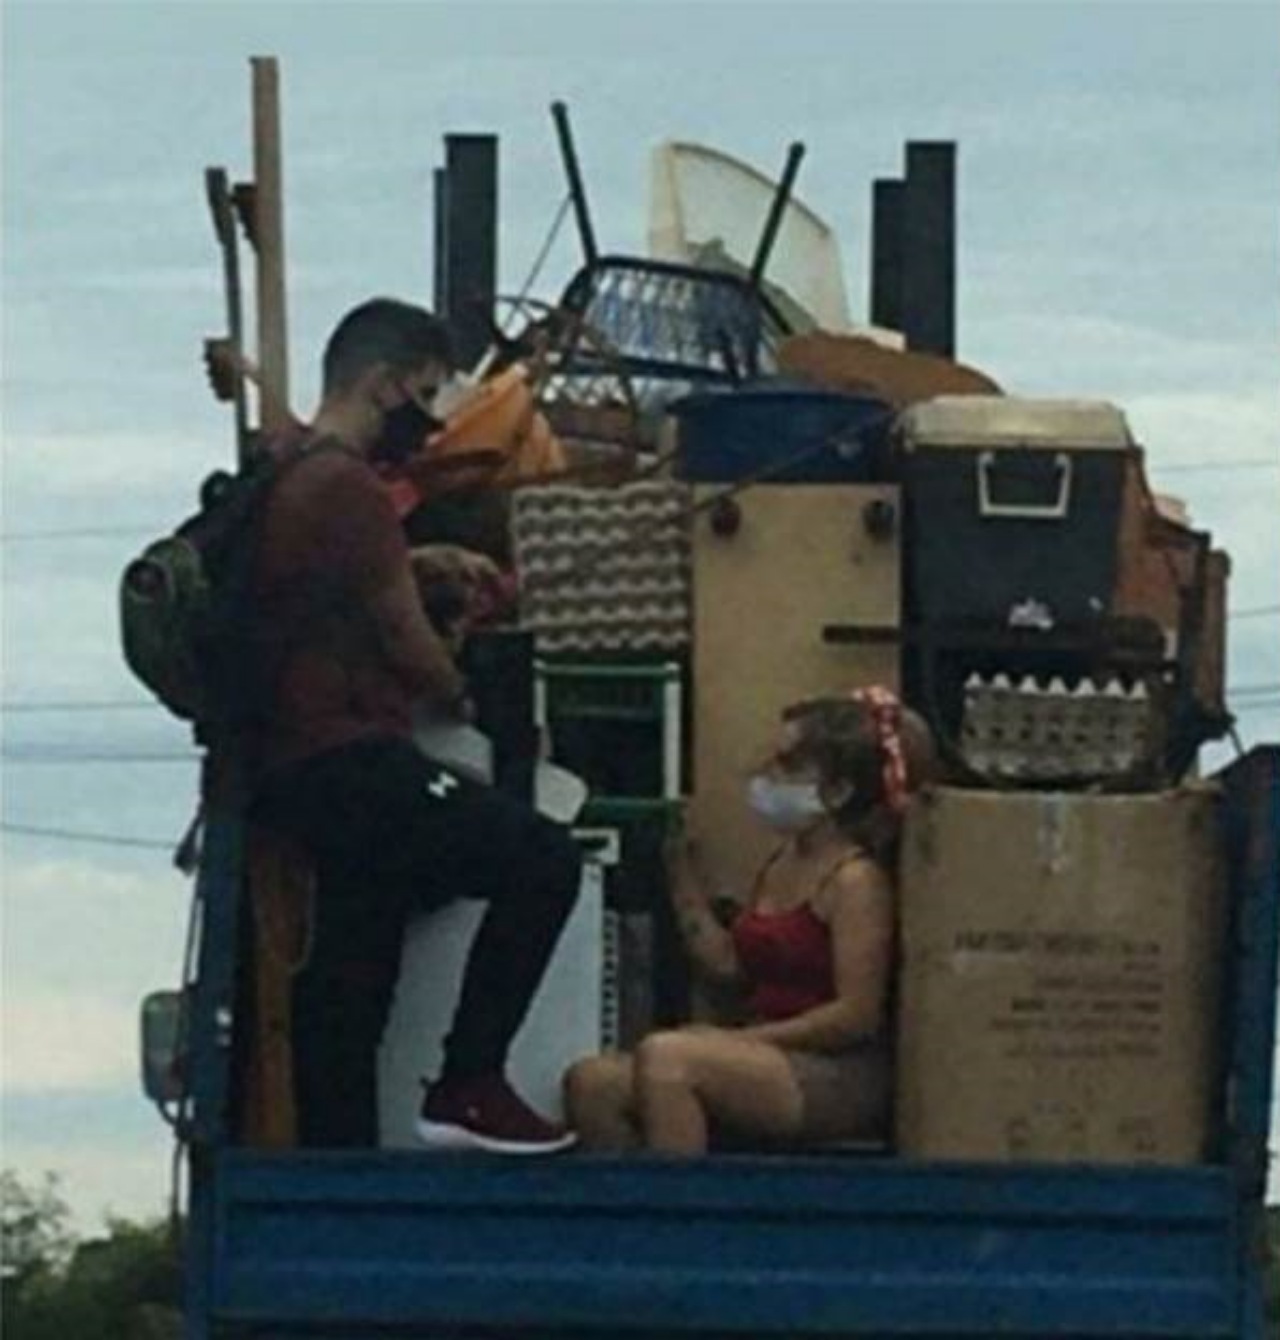 Padroni caricano il cane sul camion del trasloco